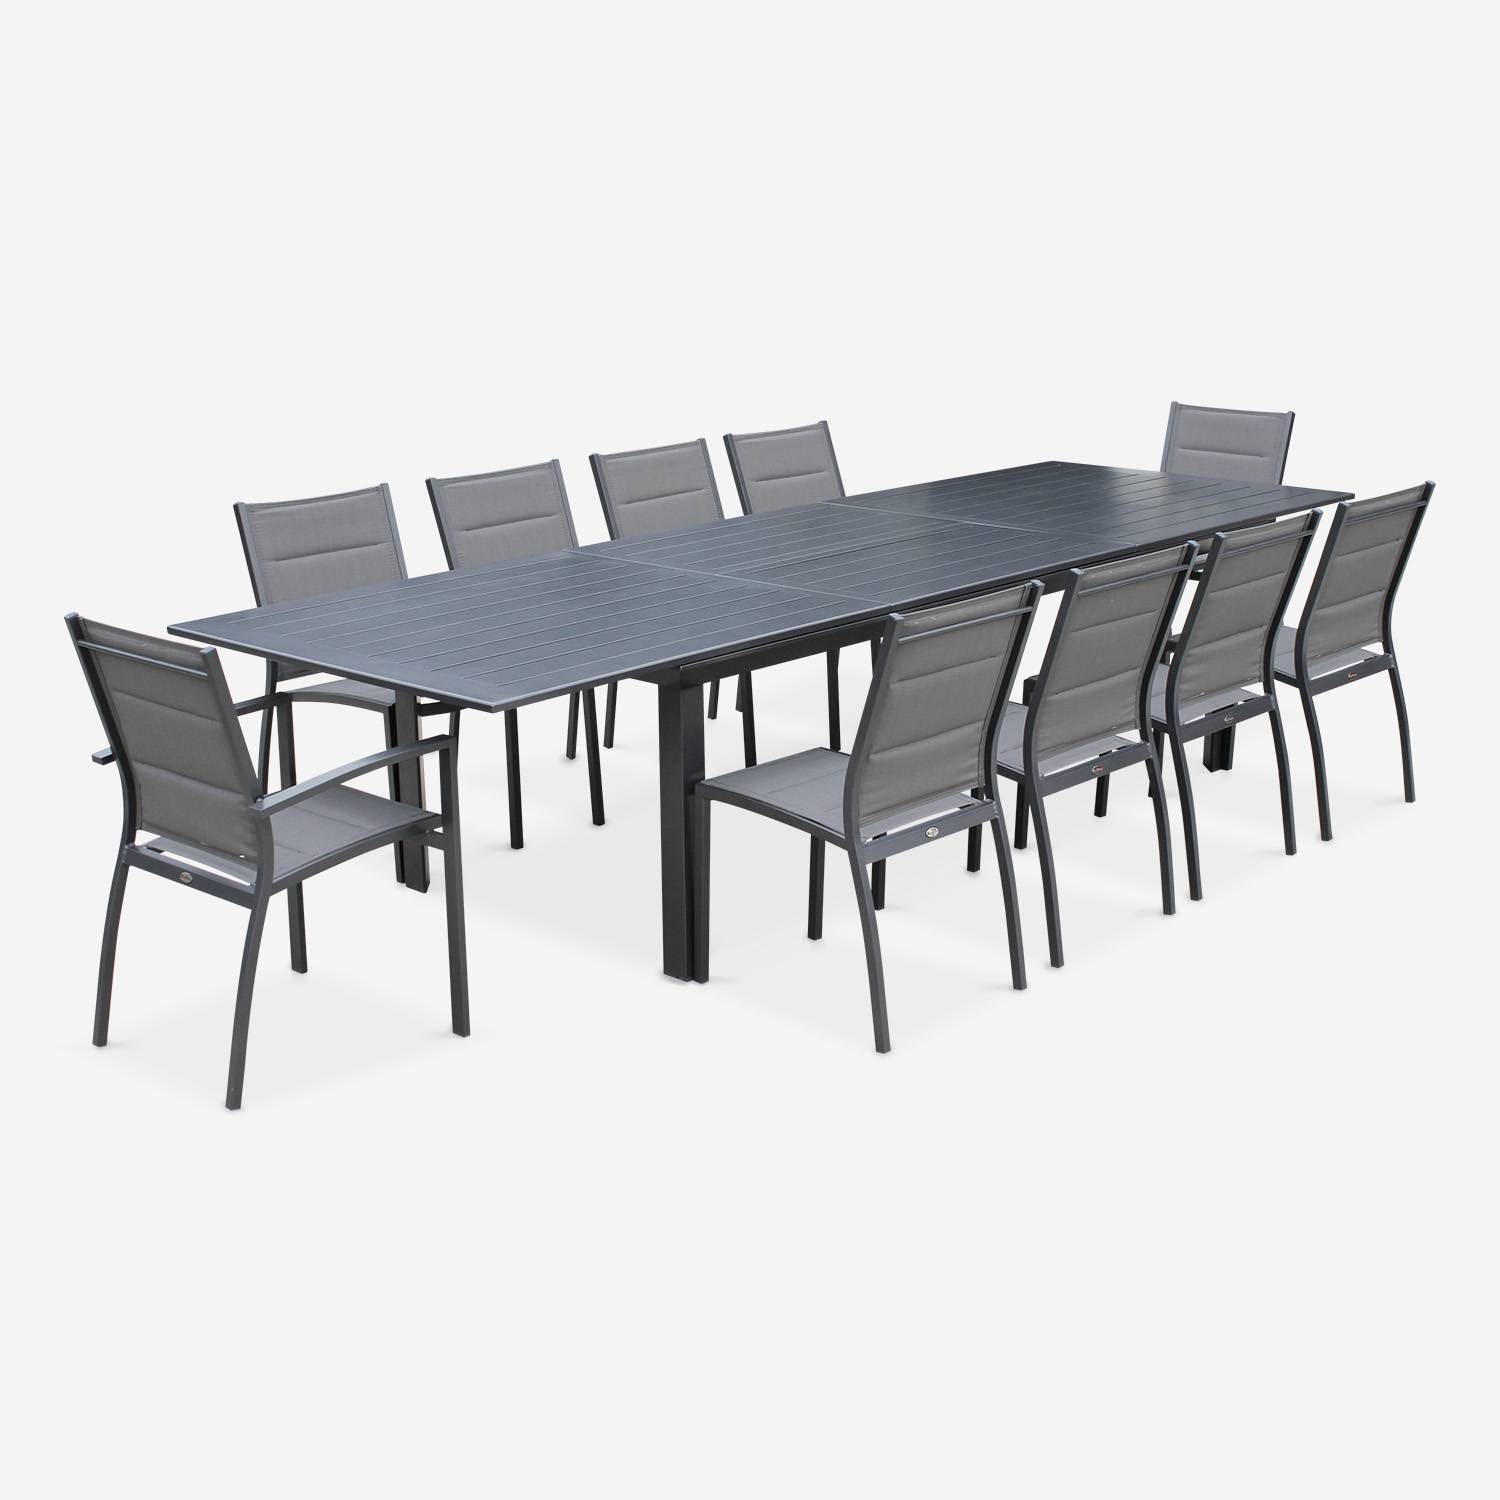 Tuinset Odenton, 1 uitschuifbare tafel, 2 fauteuils, 8 stoelen van aluminium en textileen Photo2